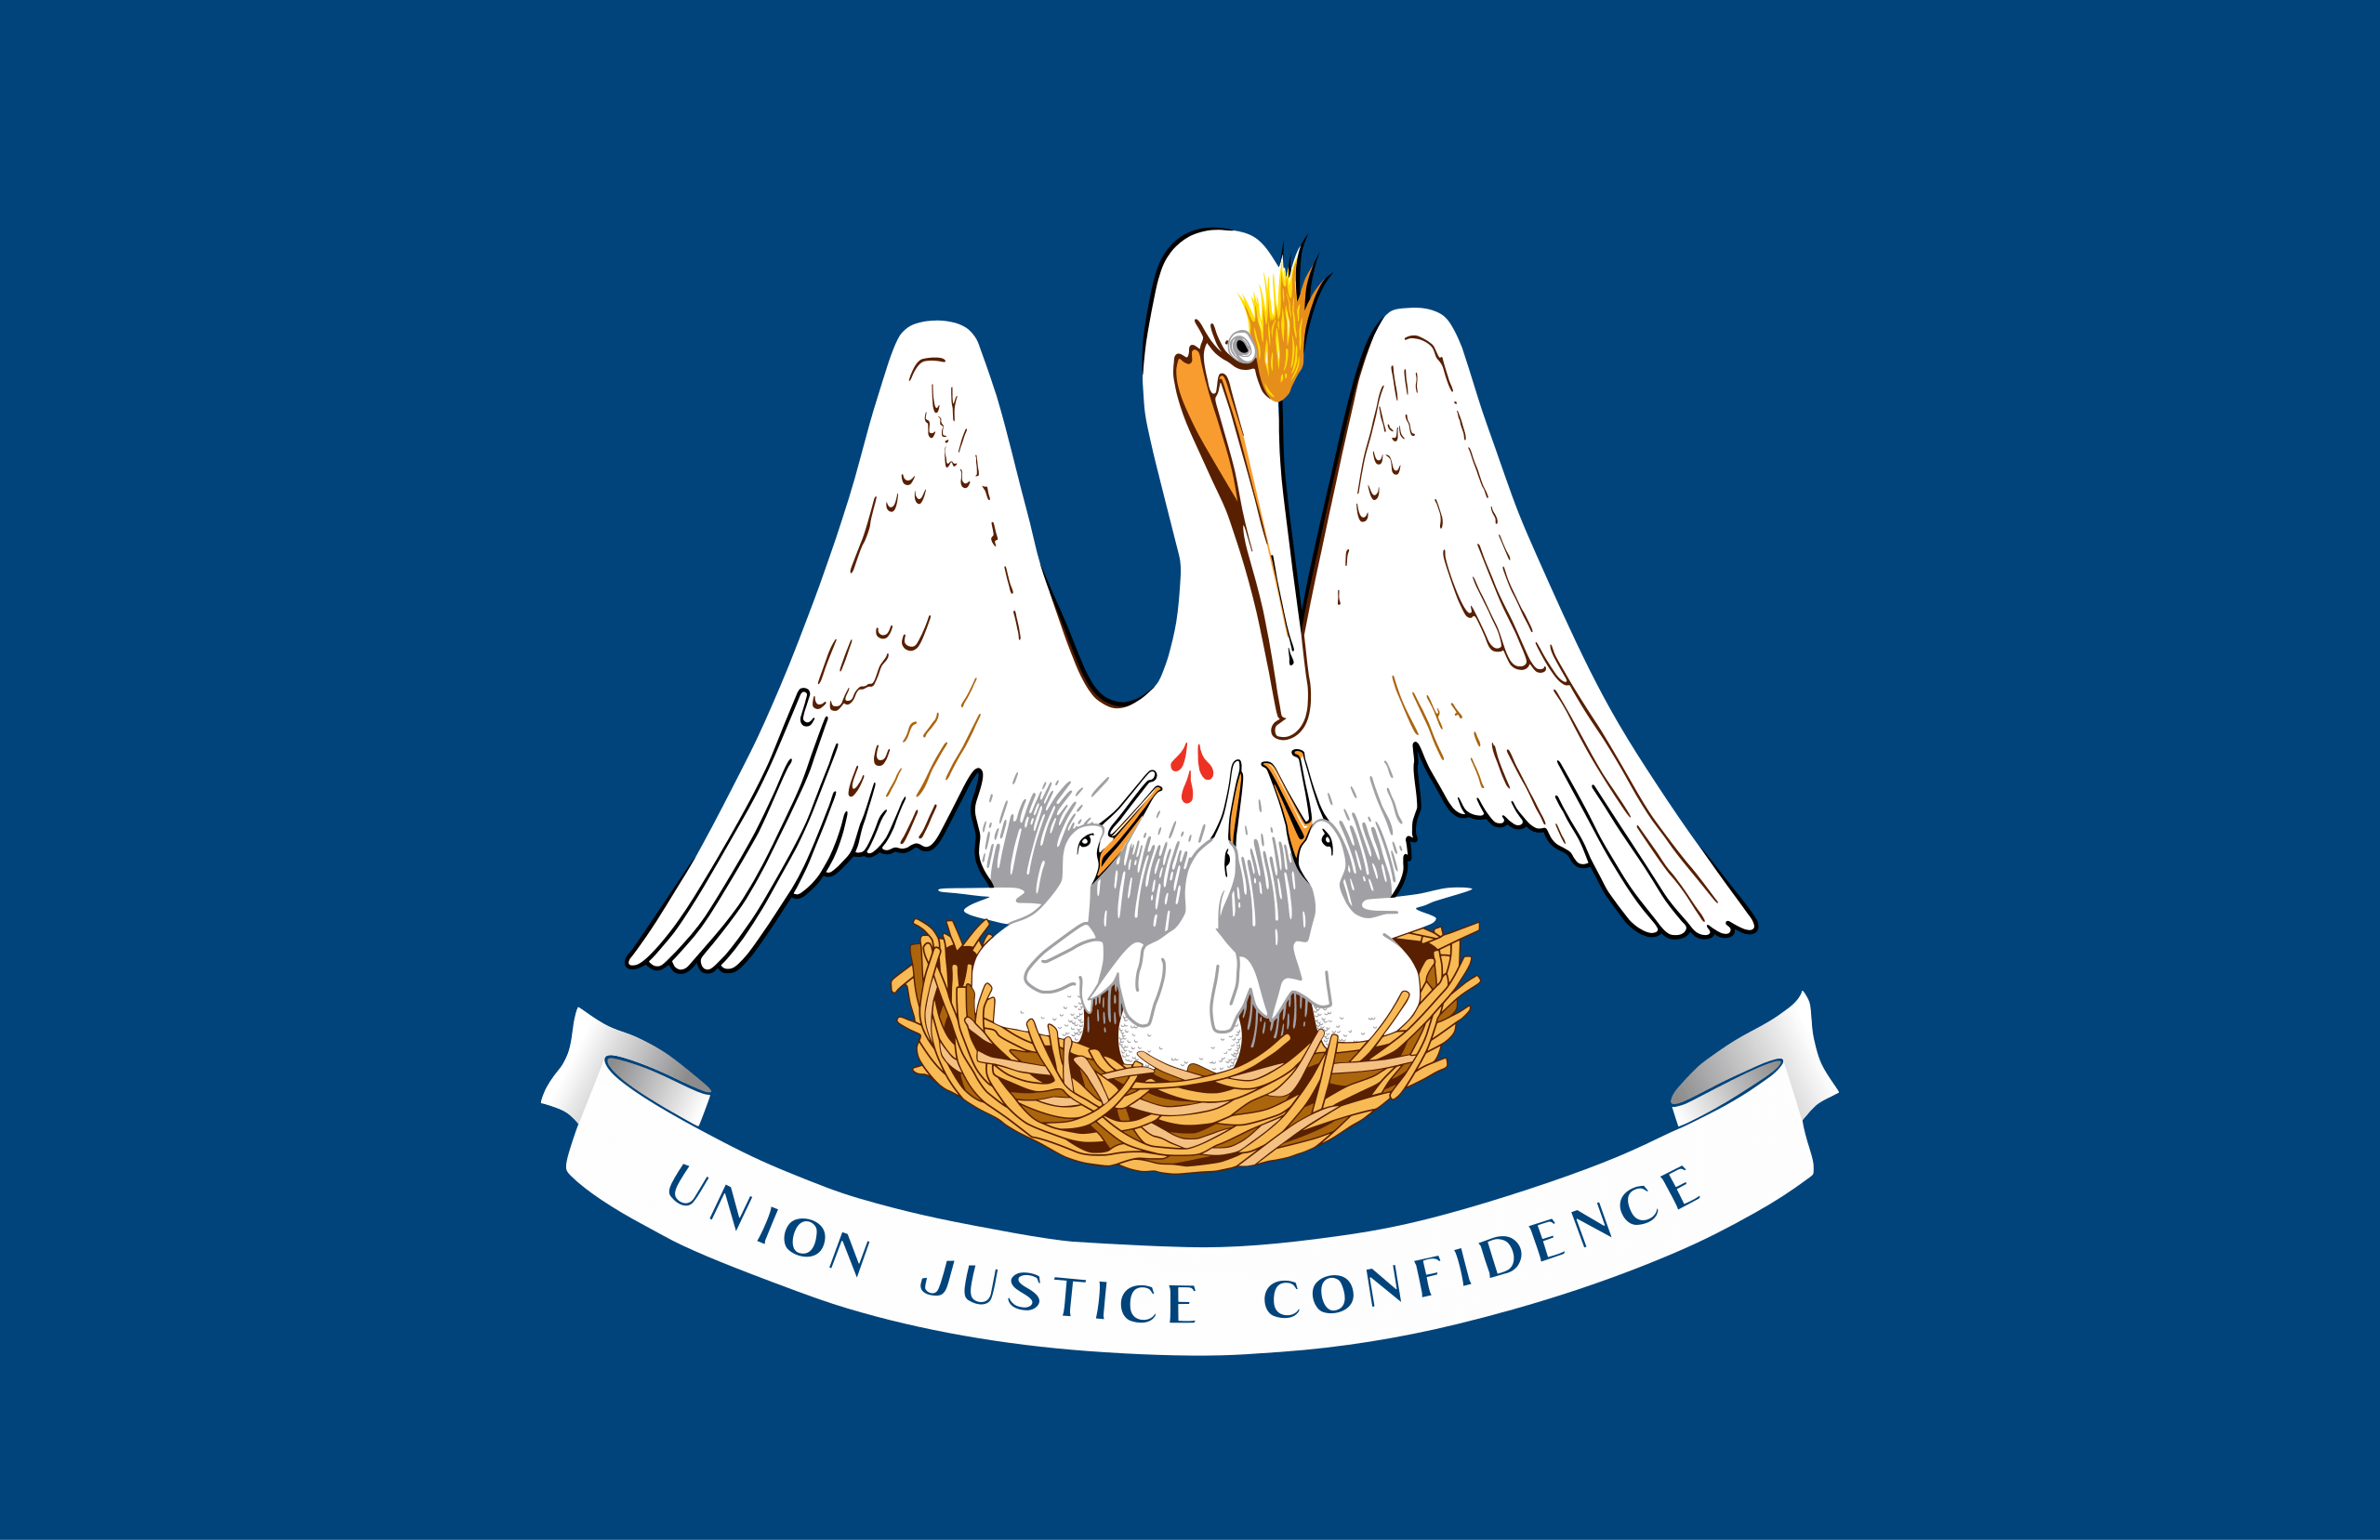 The Louisiana State Flag